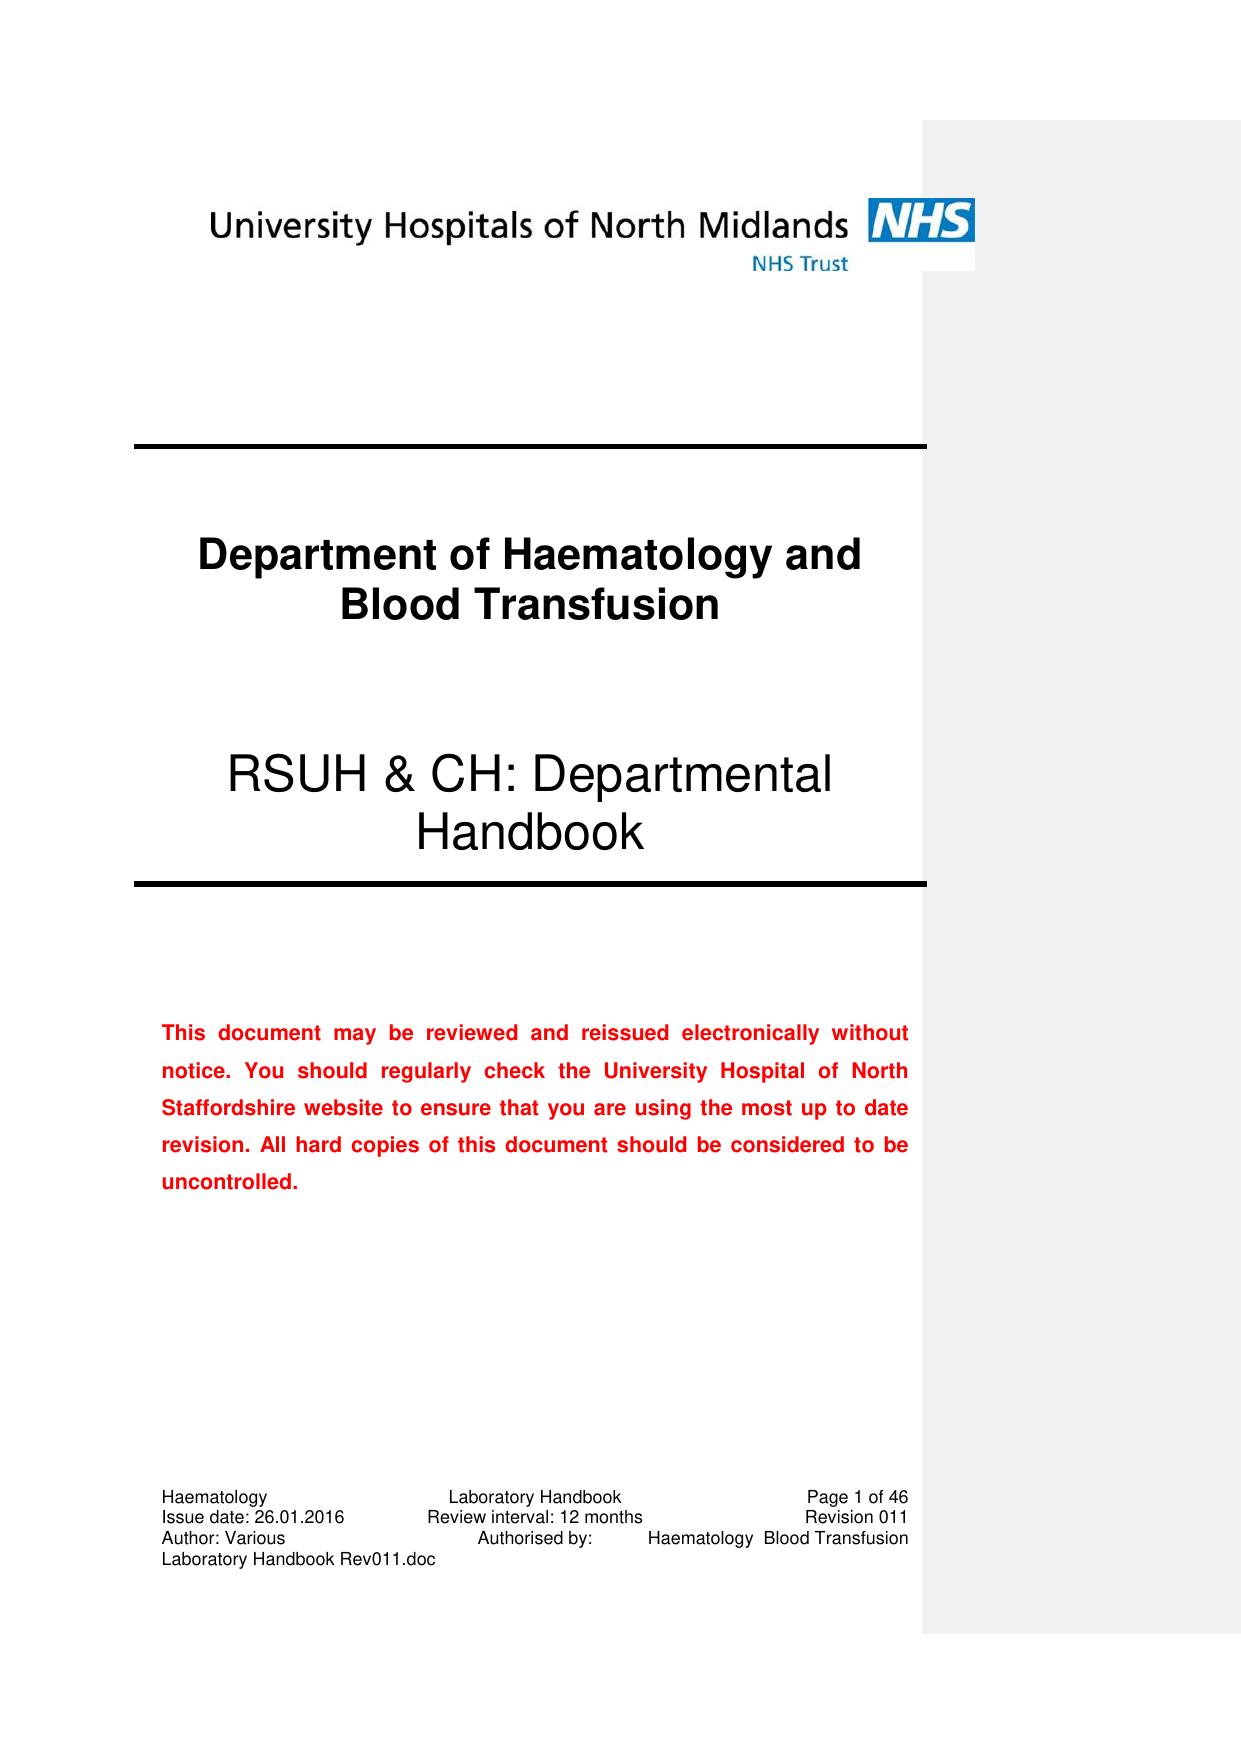 Haematology handbook 2016